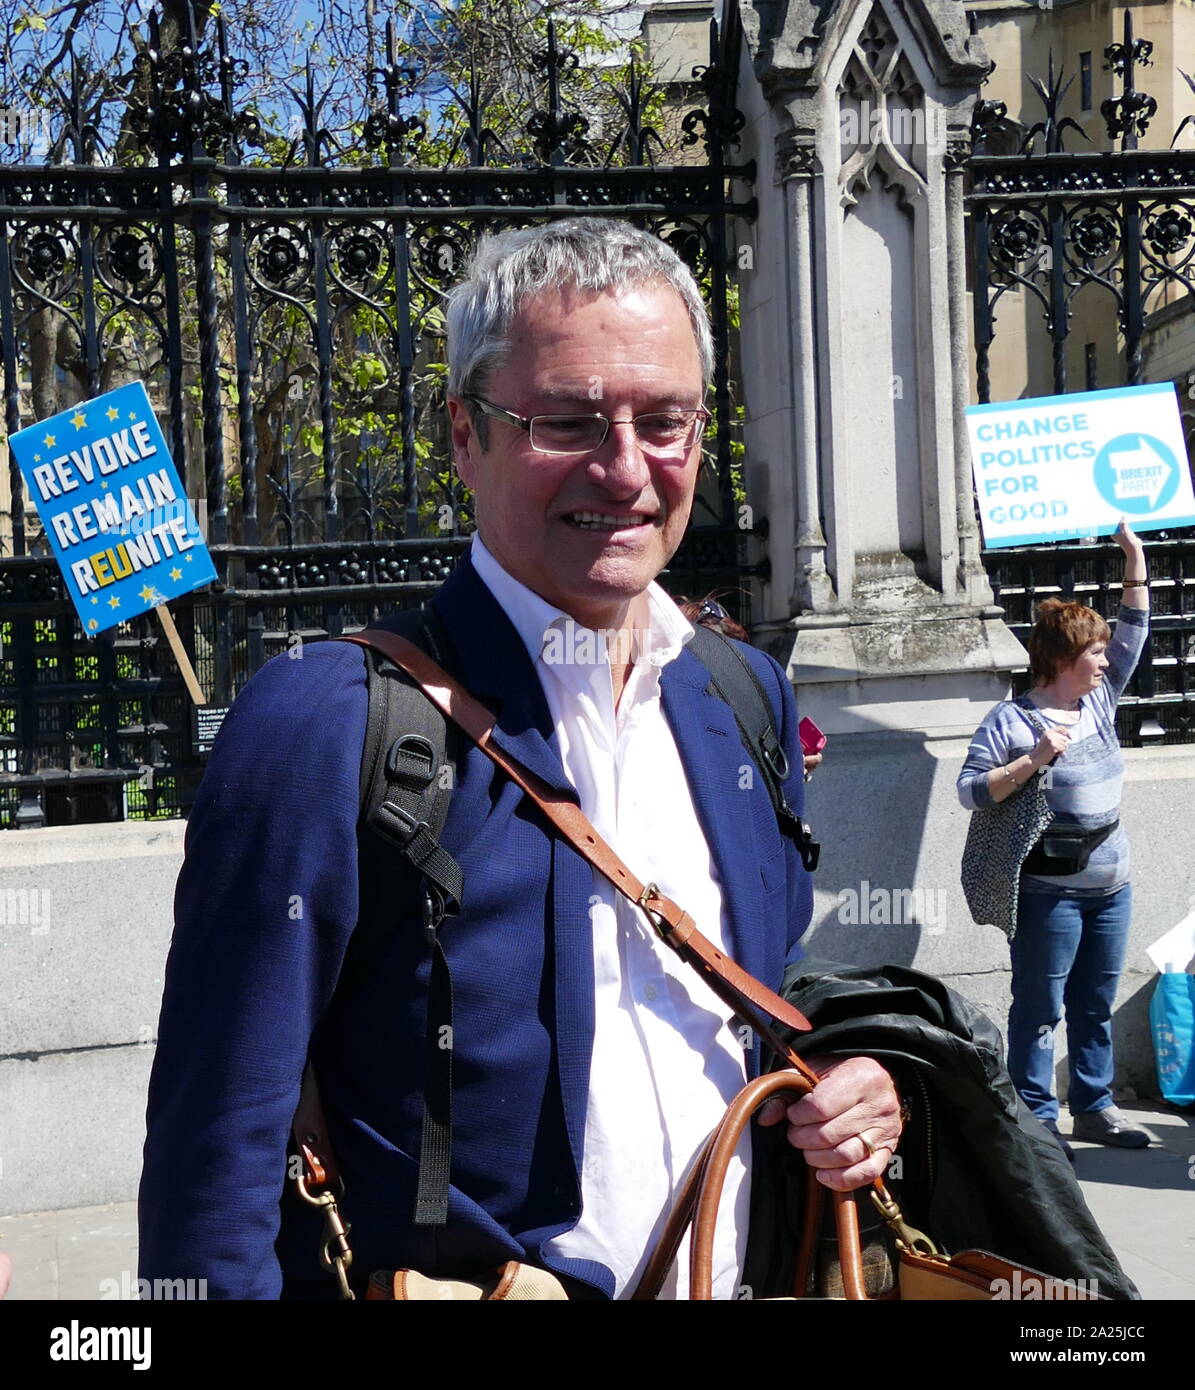 Gavin Esler, écossais, journaliste, animateur de télévision et auteur. Candidat pour changer UK à Londres, à l'élection du Parlement européen de 2019. Banque D'Images